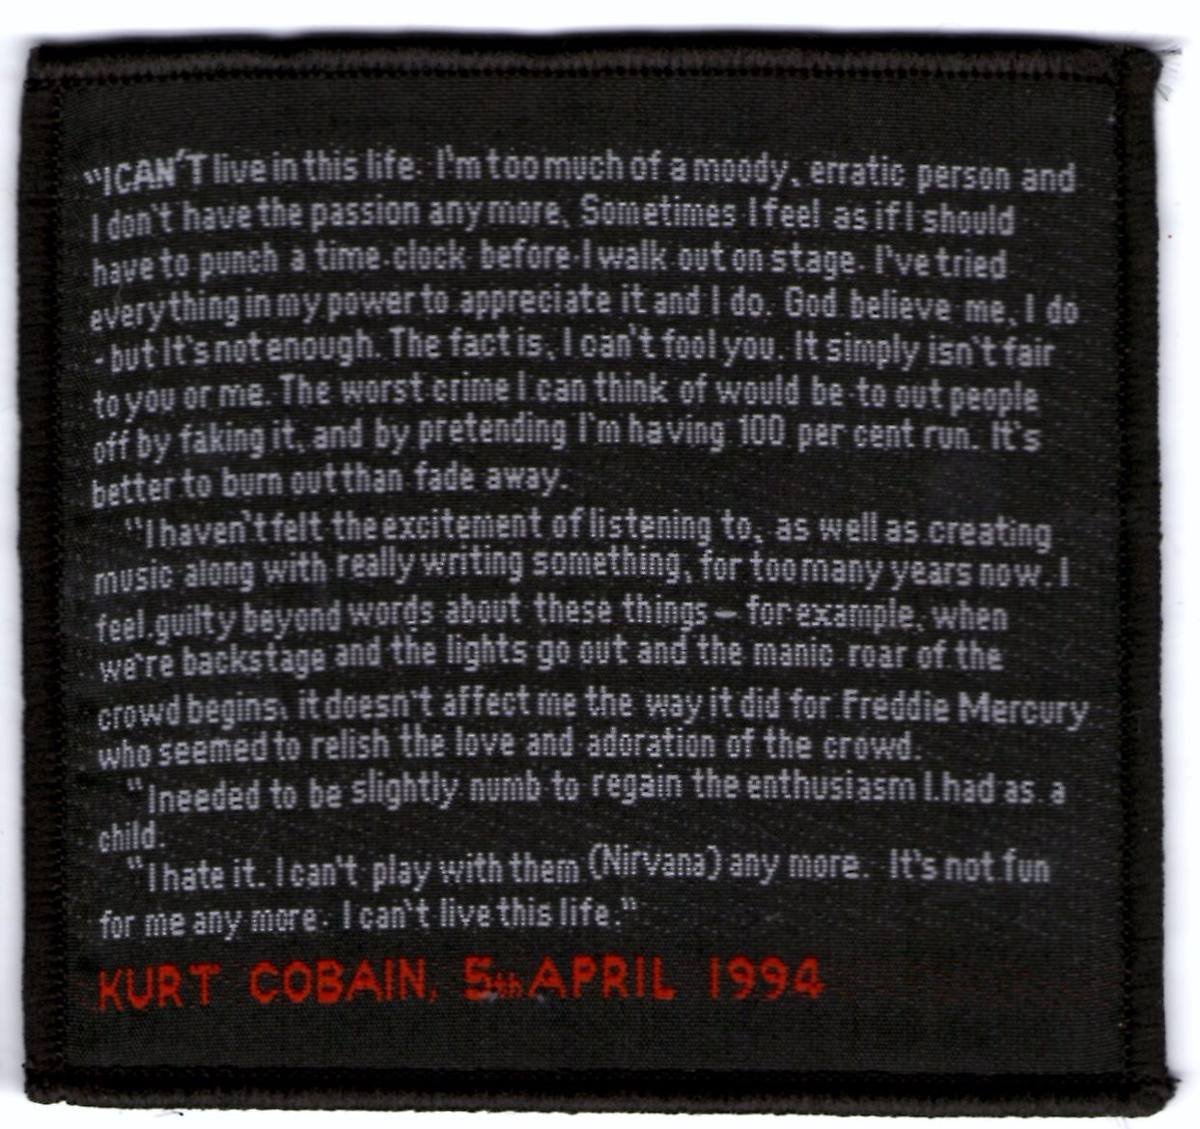 Carta De Kurt Cobain Traducida - Best Quotes u